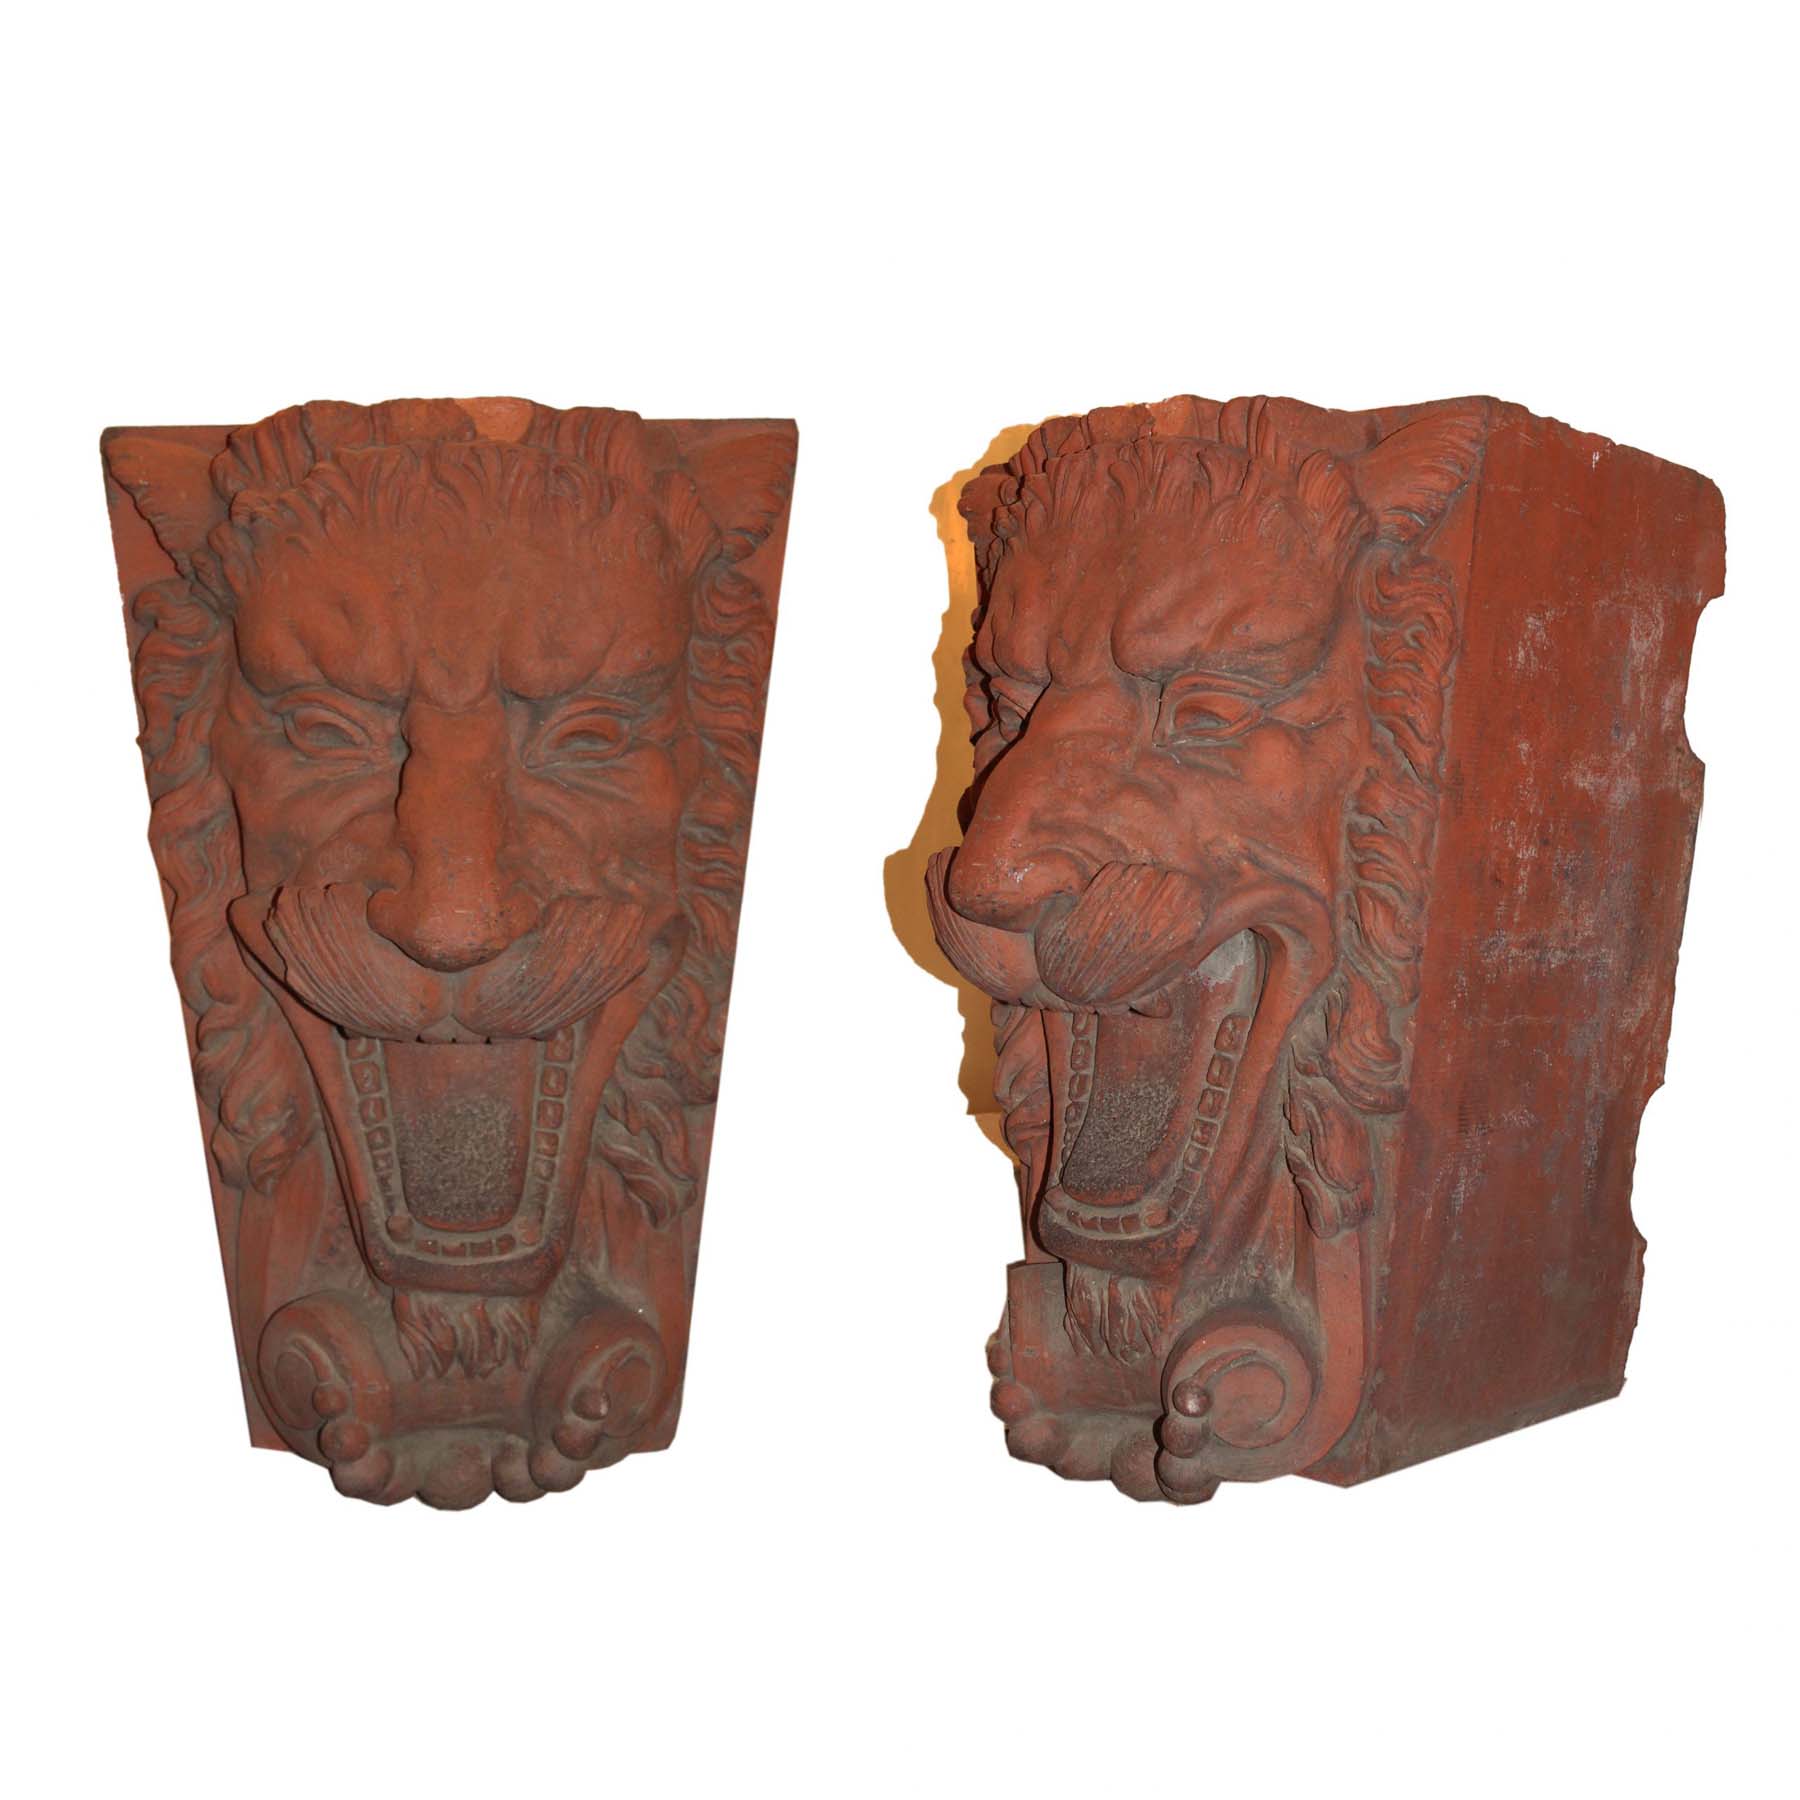 Antique Figural Terra Cotta Decorative Pieces, Lions-0